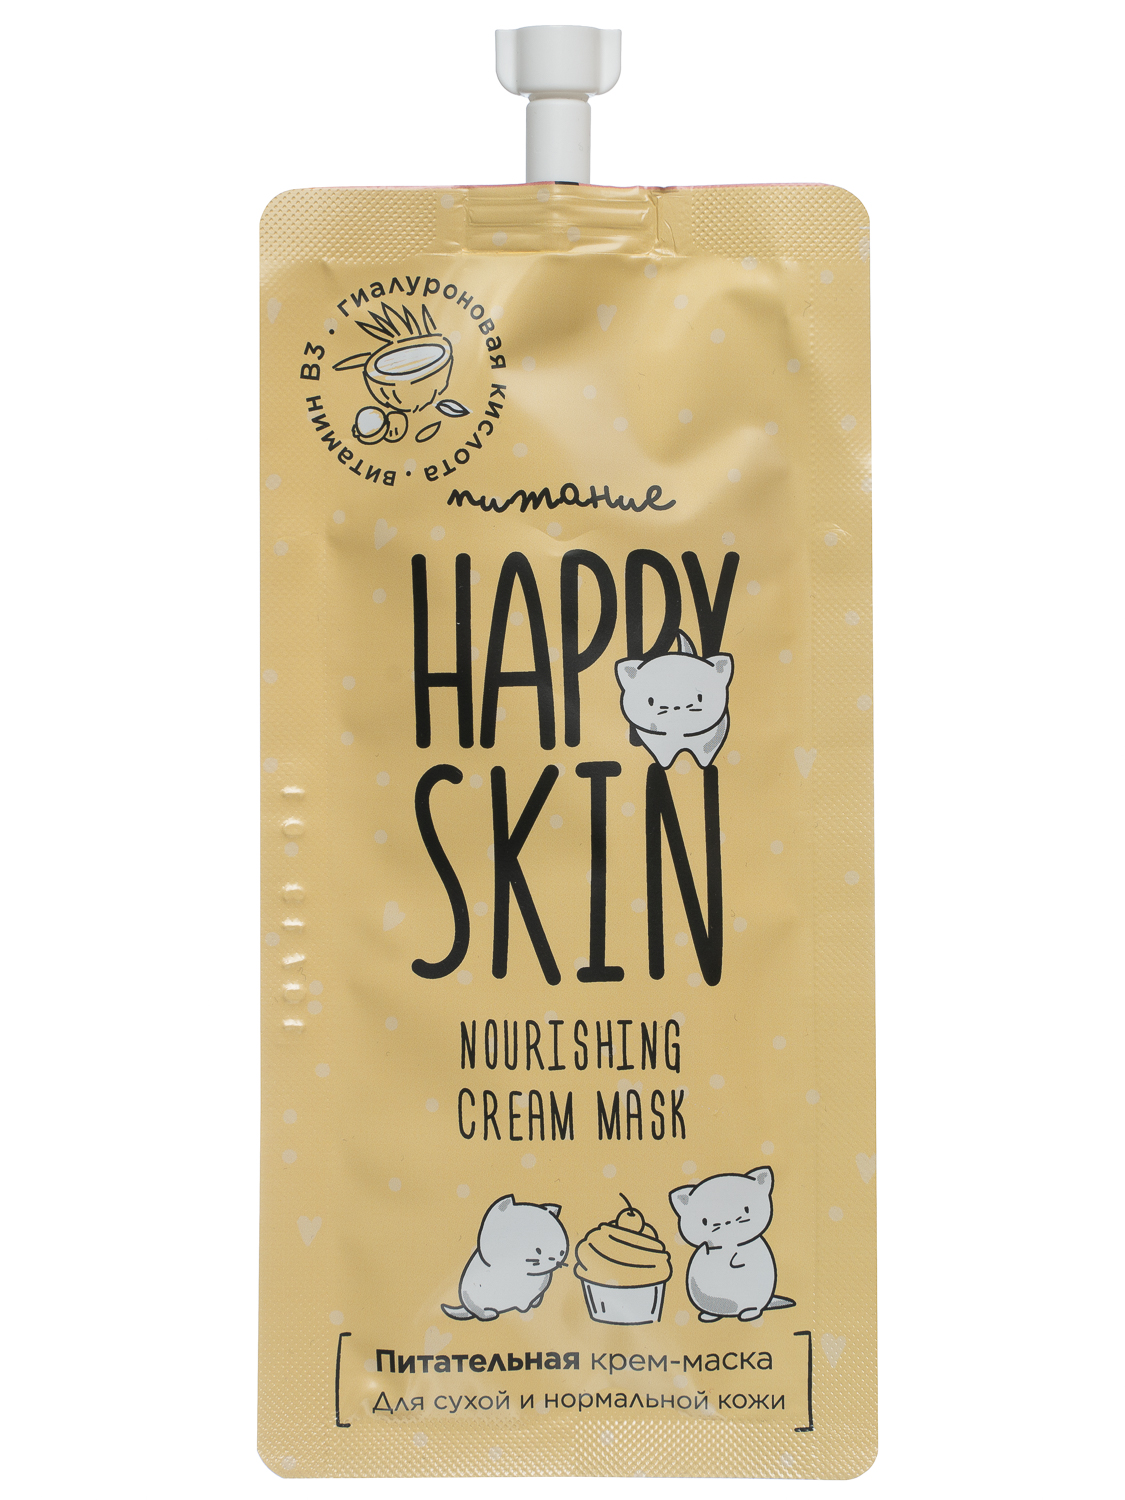 Питательная маска Happy Skin, с комплексом растительных масел, 20 мл